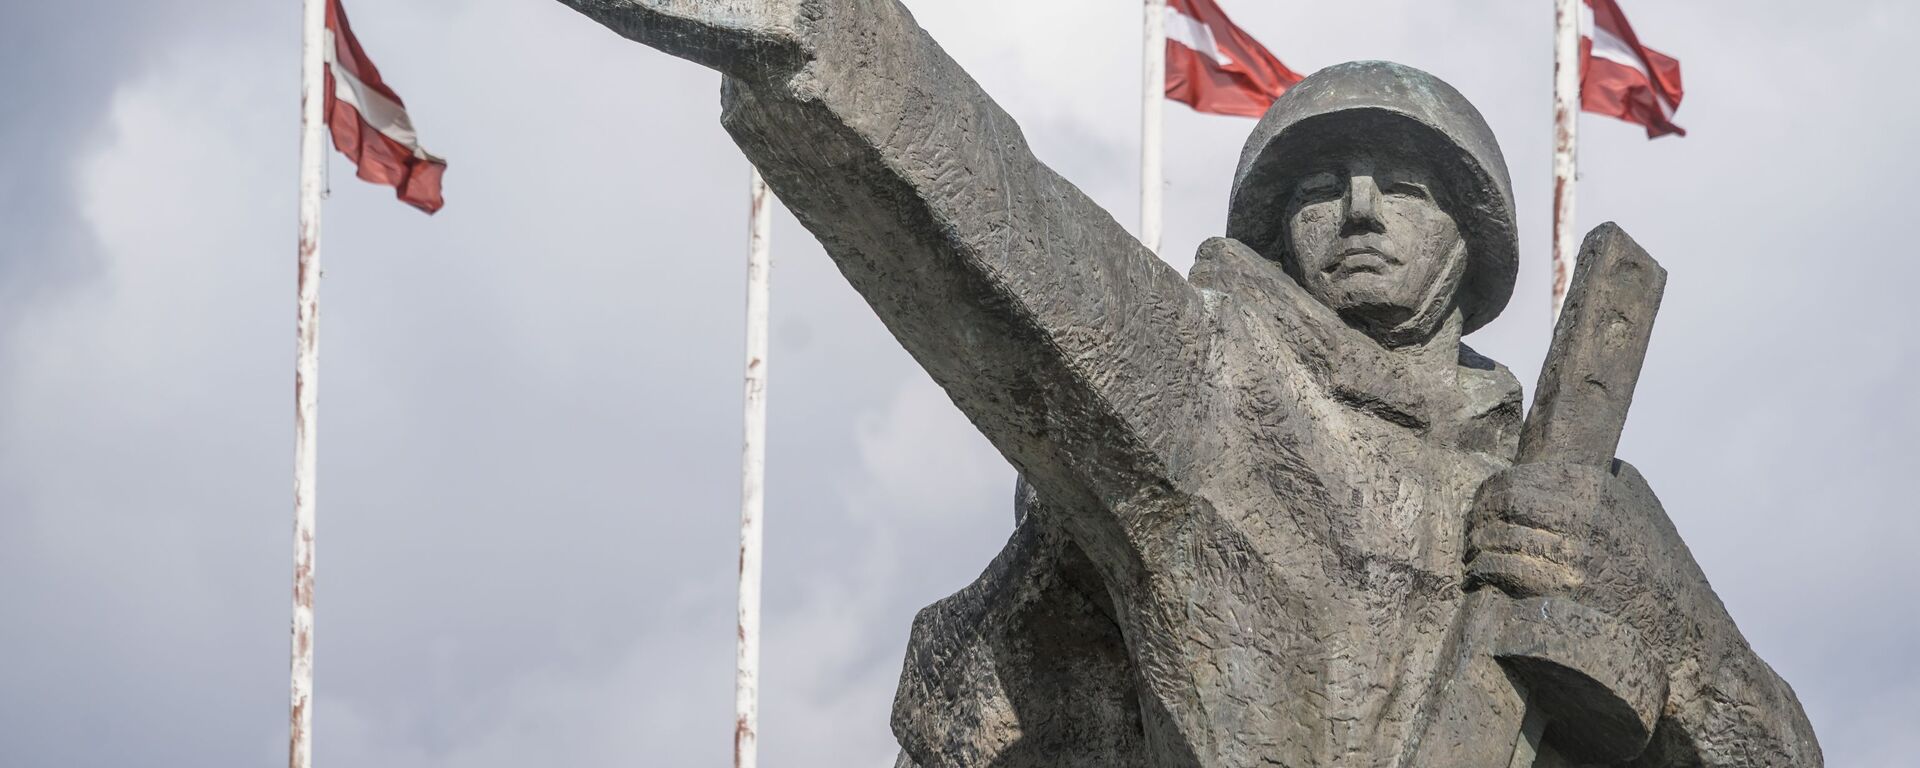 Памятник Освободителям Риги - Sputnik Latvija, 1920, 02.05.2021